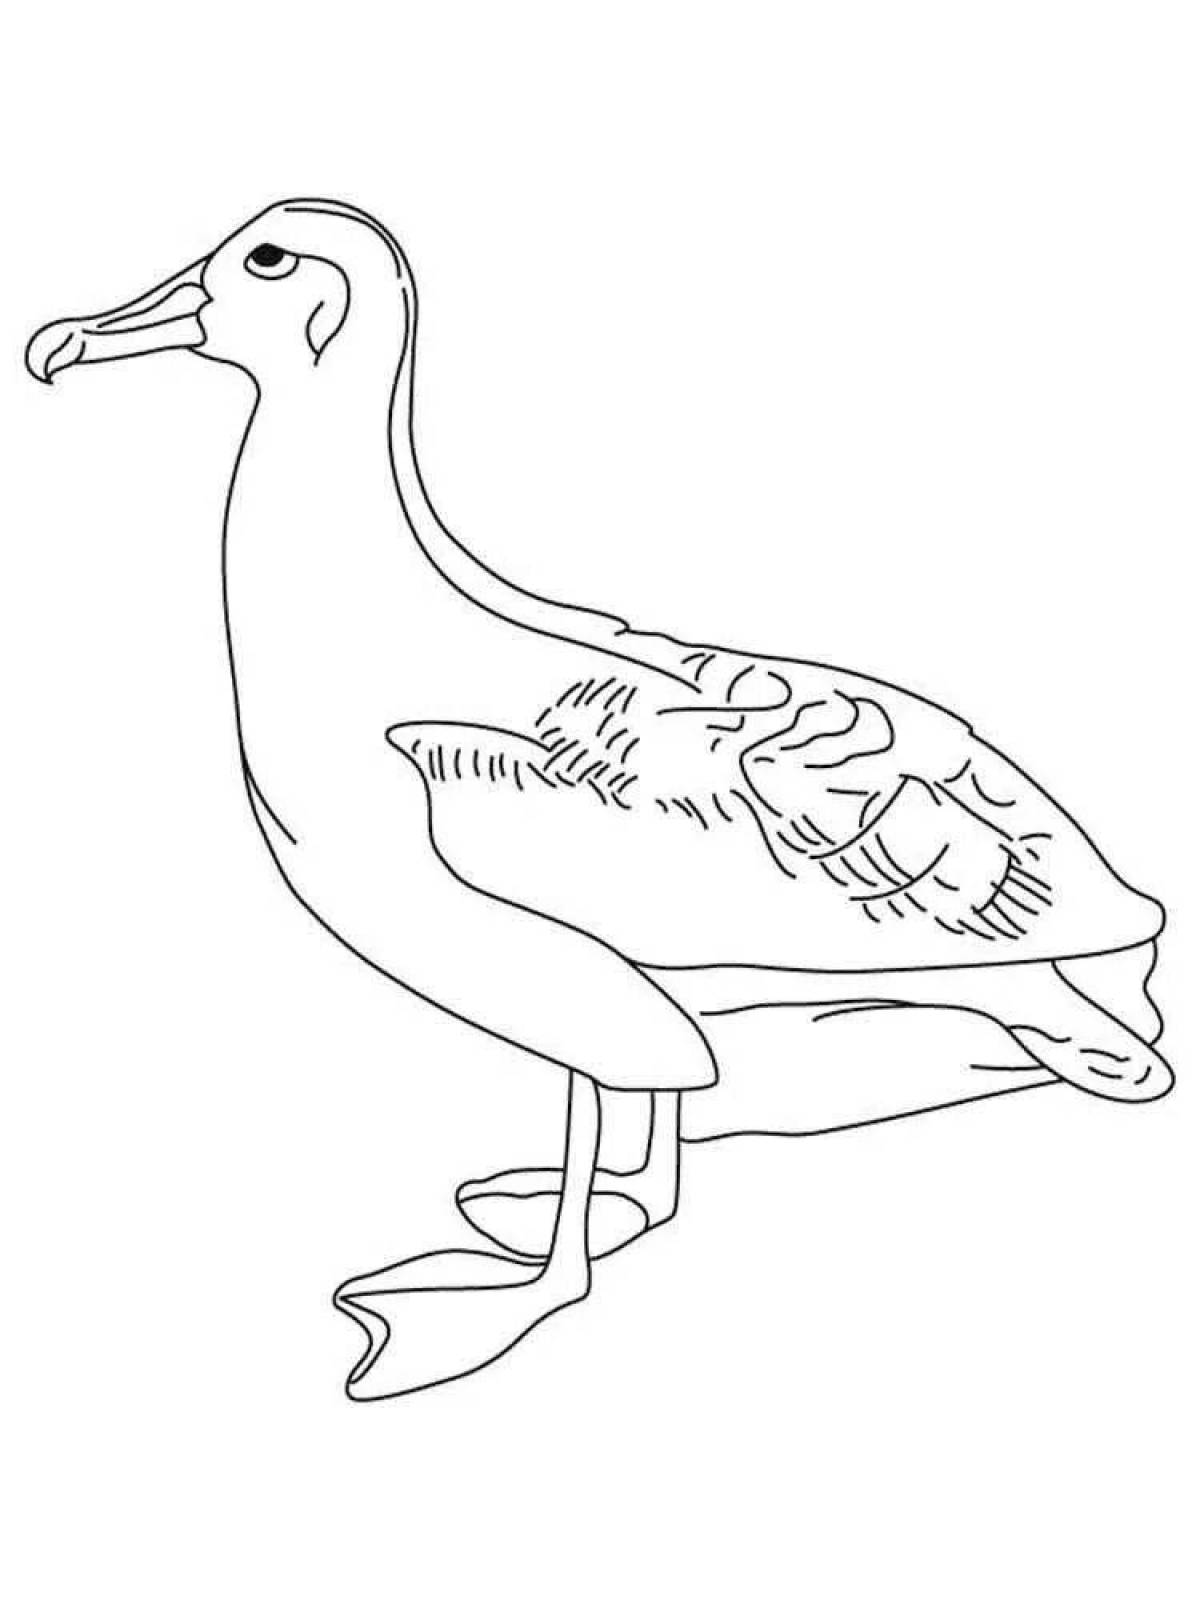 Violent albatross coloring book